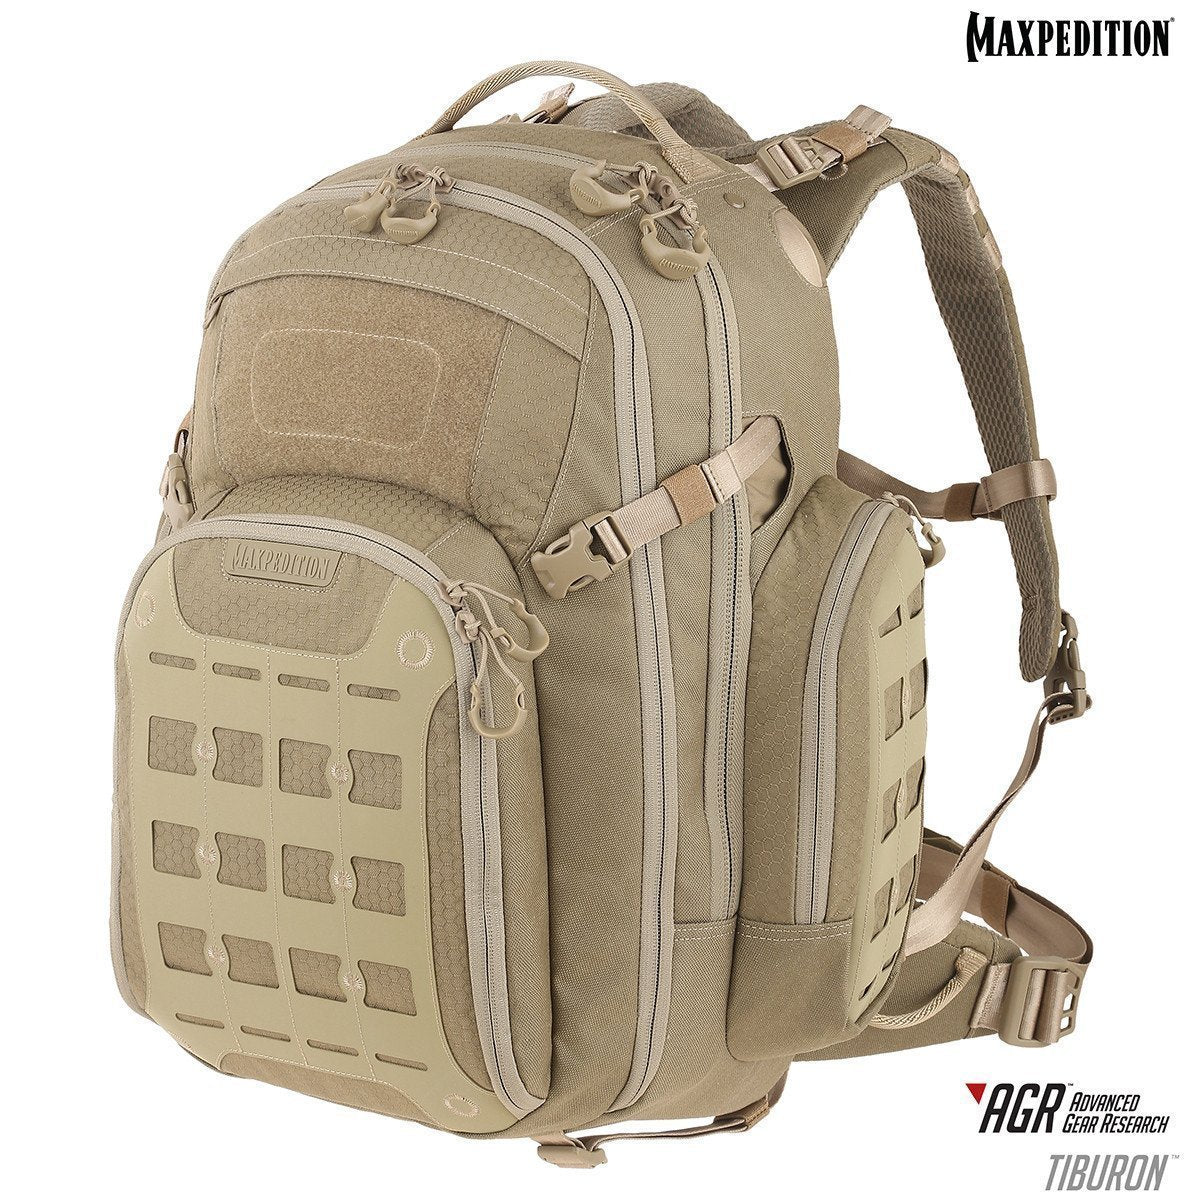 Maxpedition Tiburon Backpack 34L Tan Tactical Distributors Ltd New Zealand